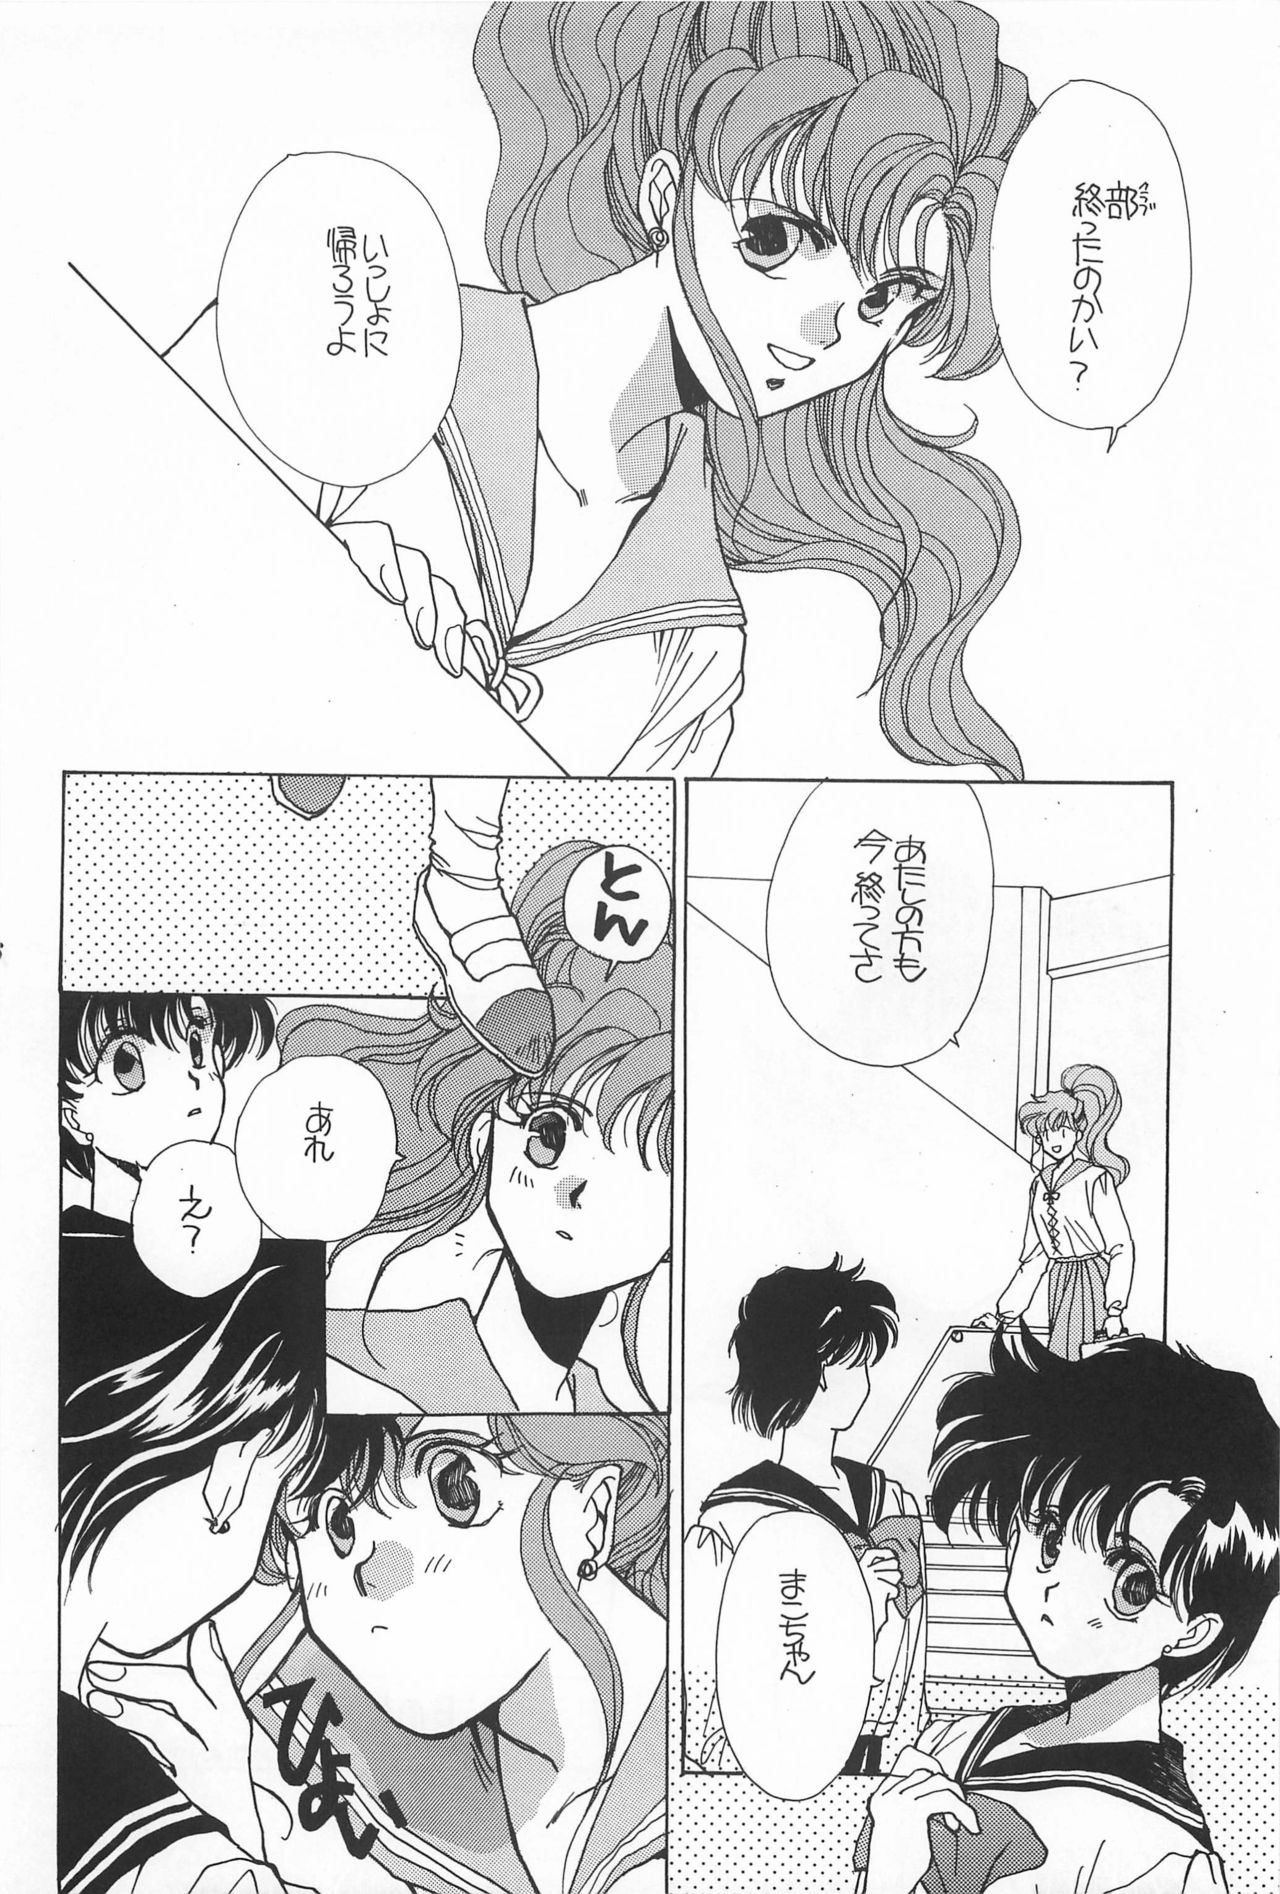 [Hello World (Muttri Moony)] Kaze no You ni Yume no You ni - Sailor Moon Collection (Sailor Moon) 175